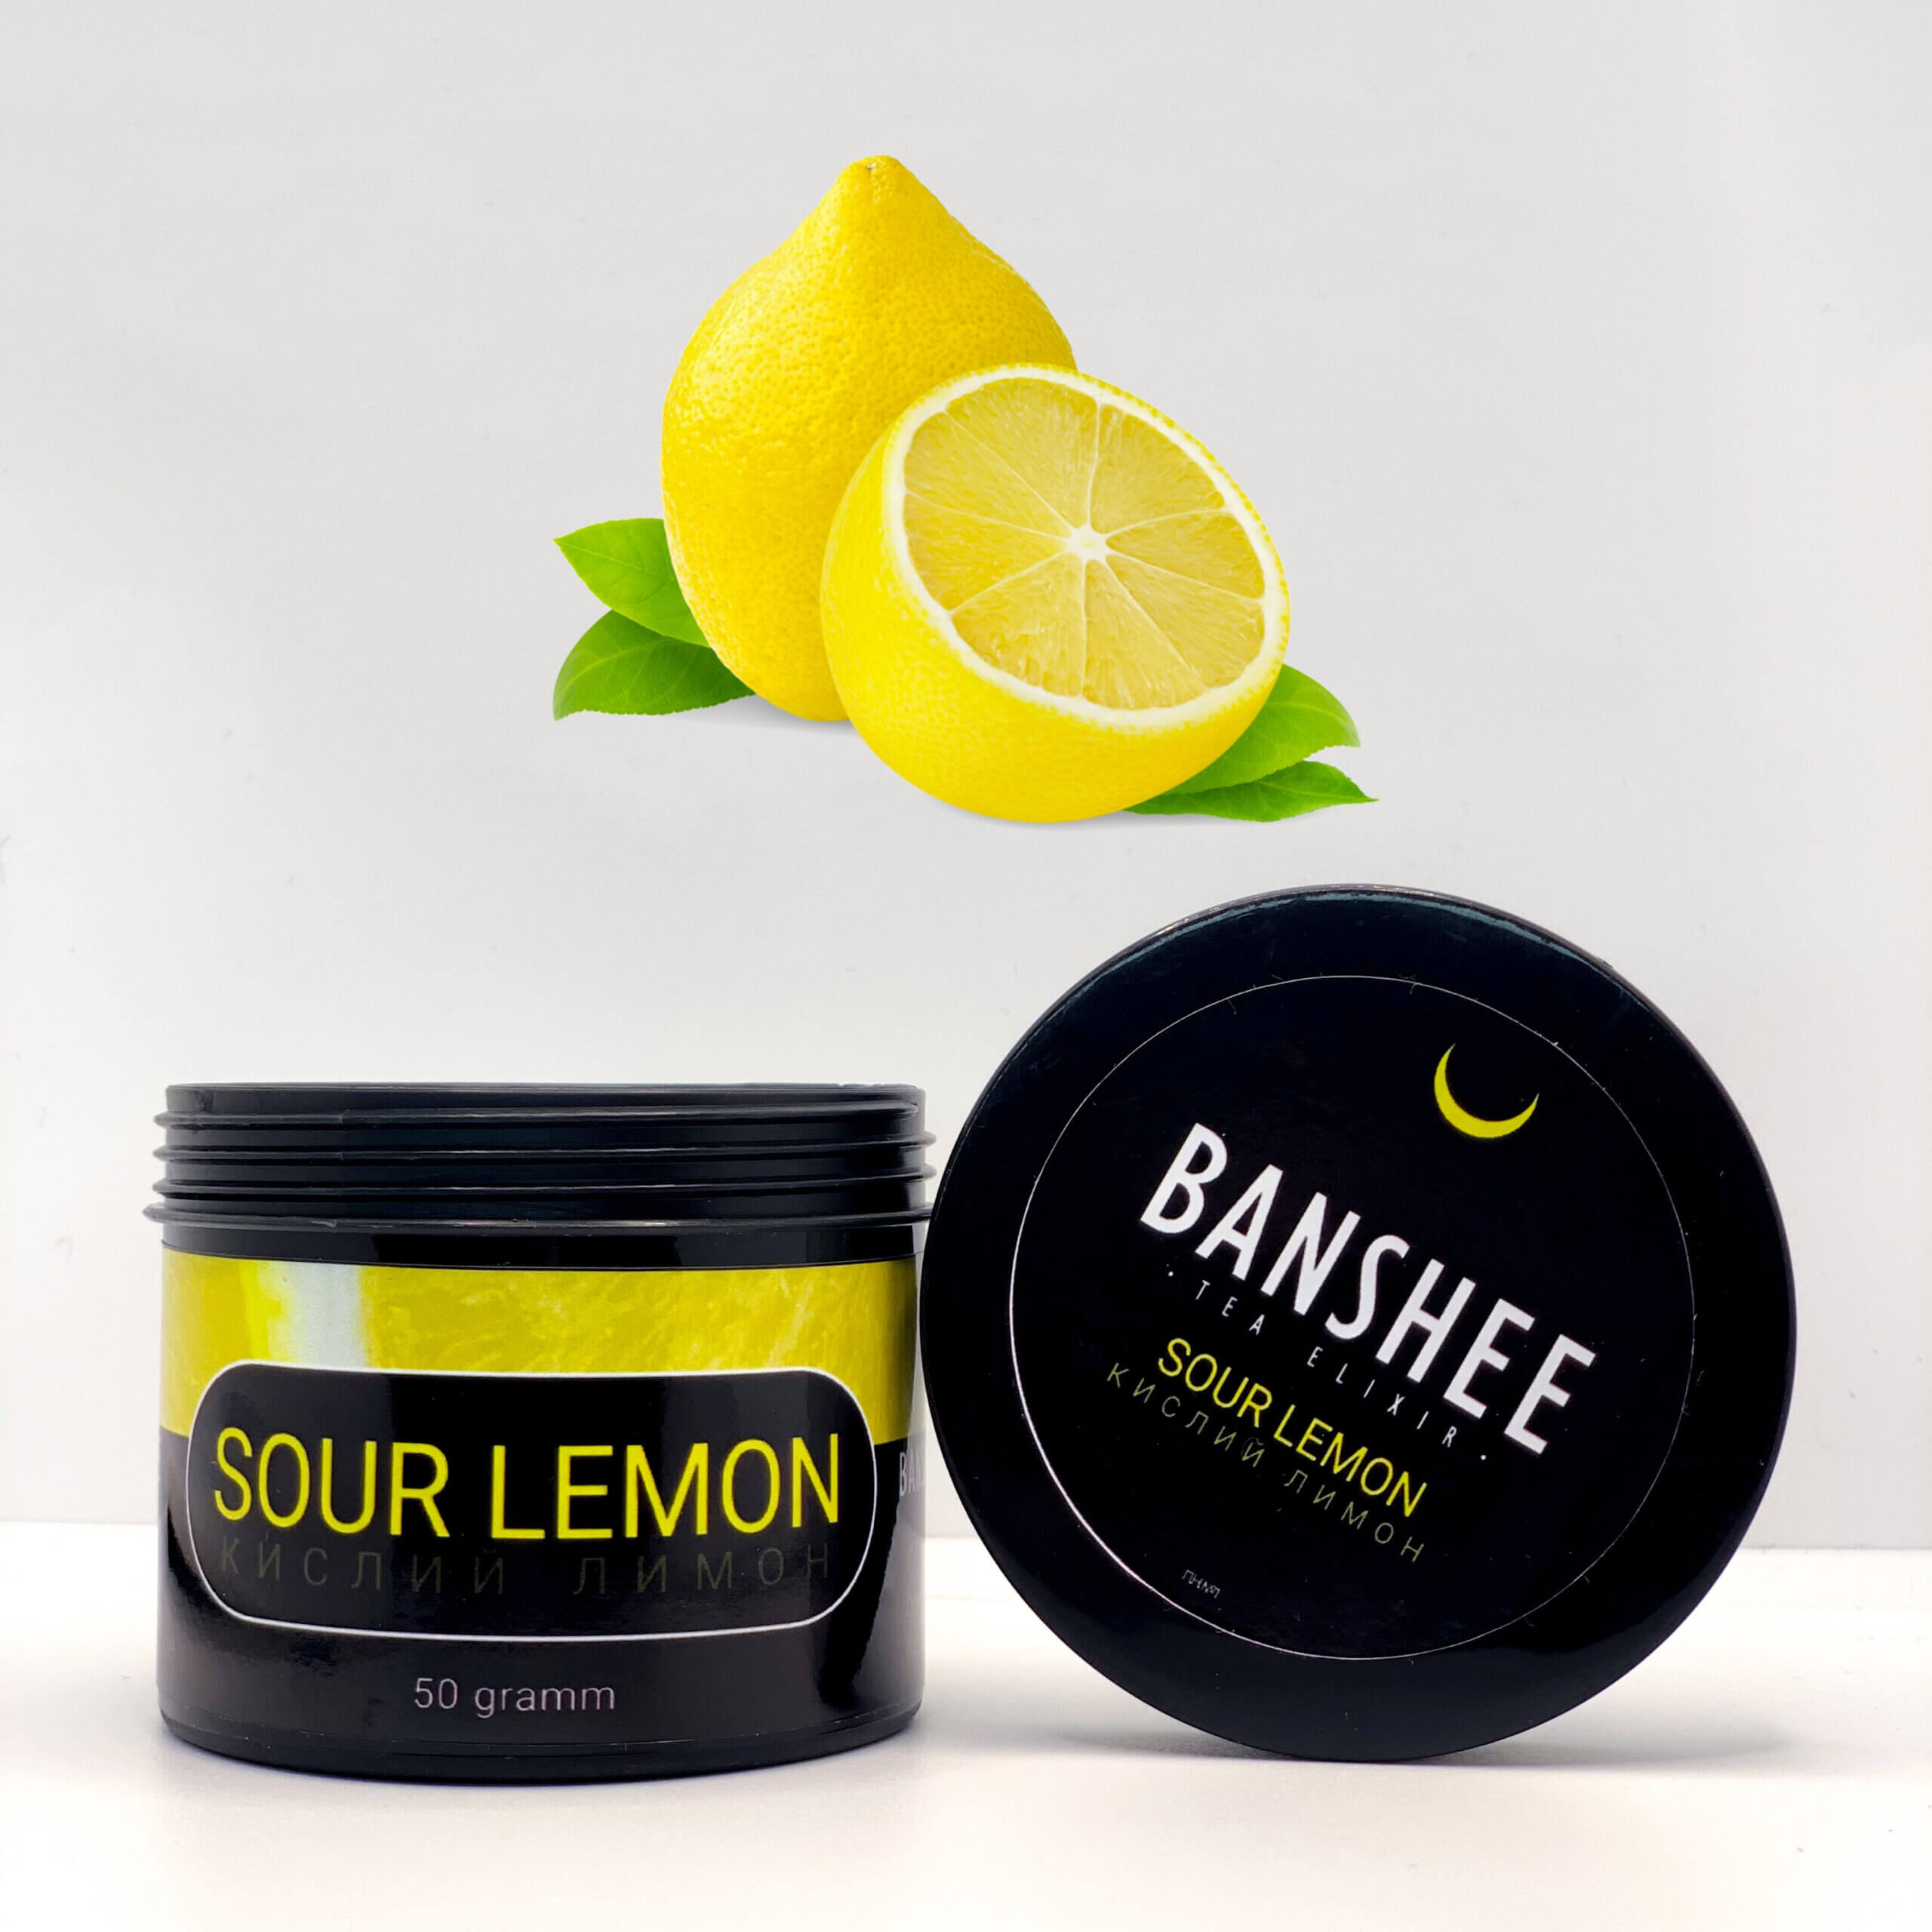 Banshee Dark Sour lemon - Кислый лимон